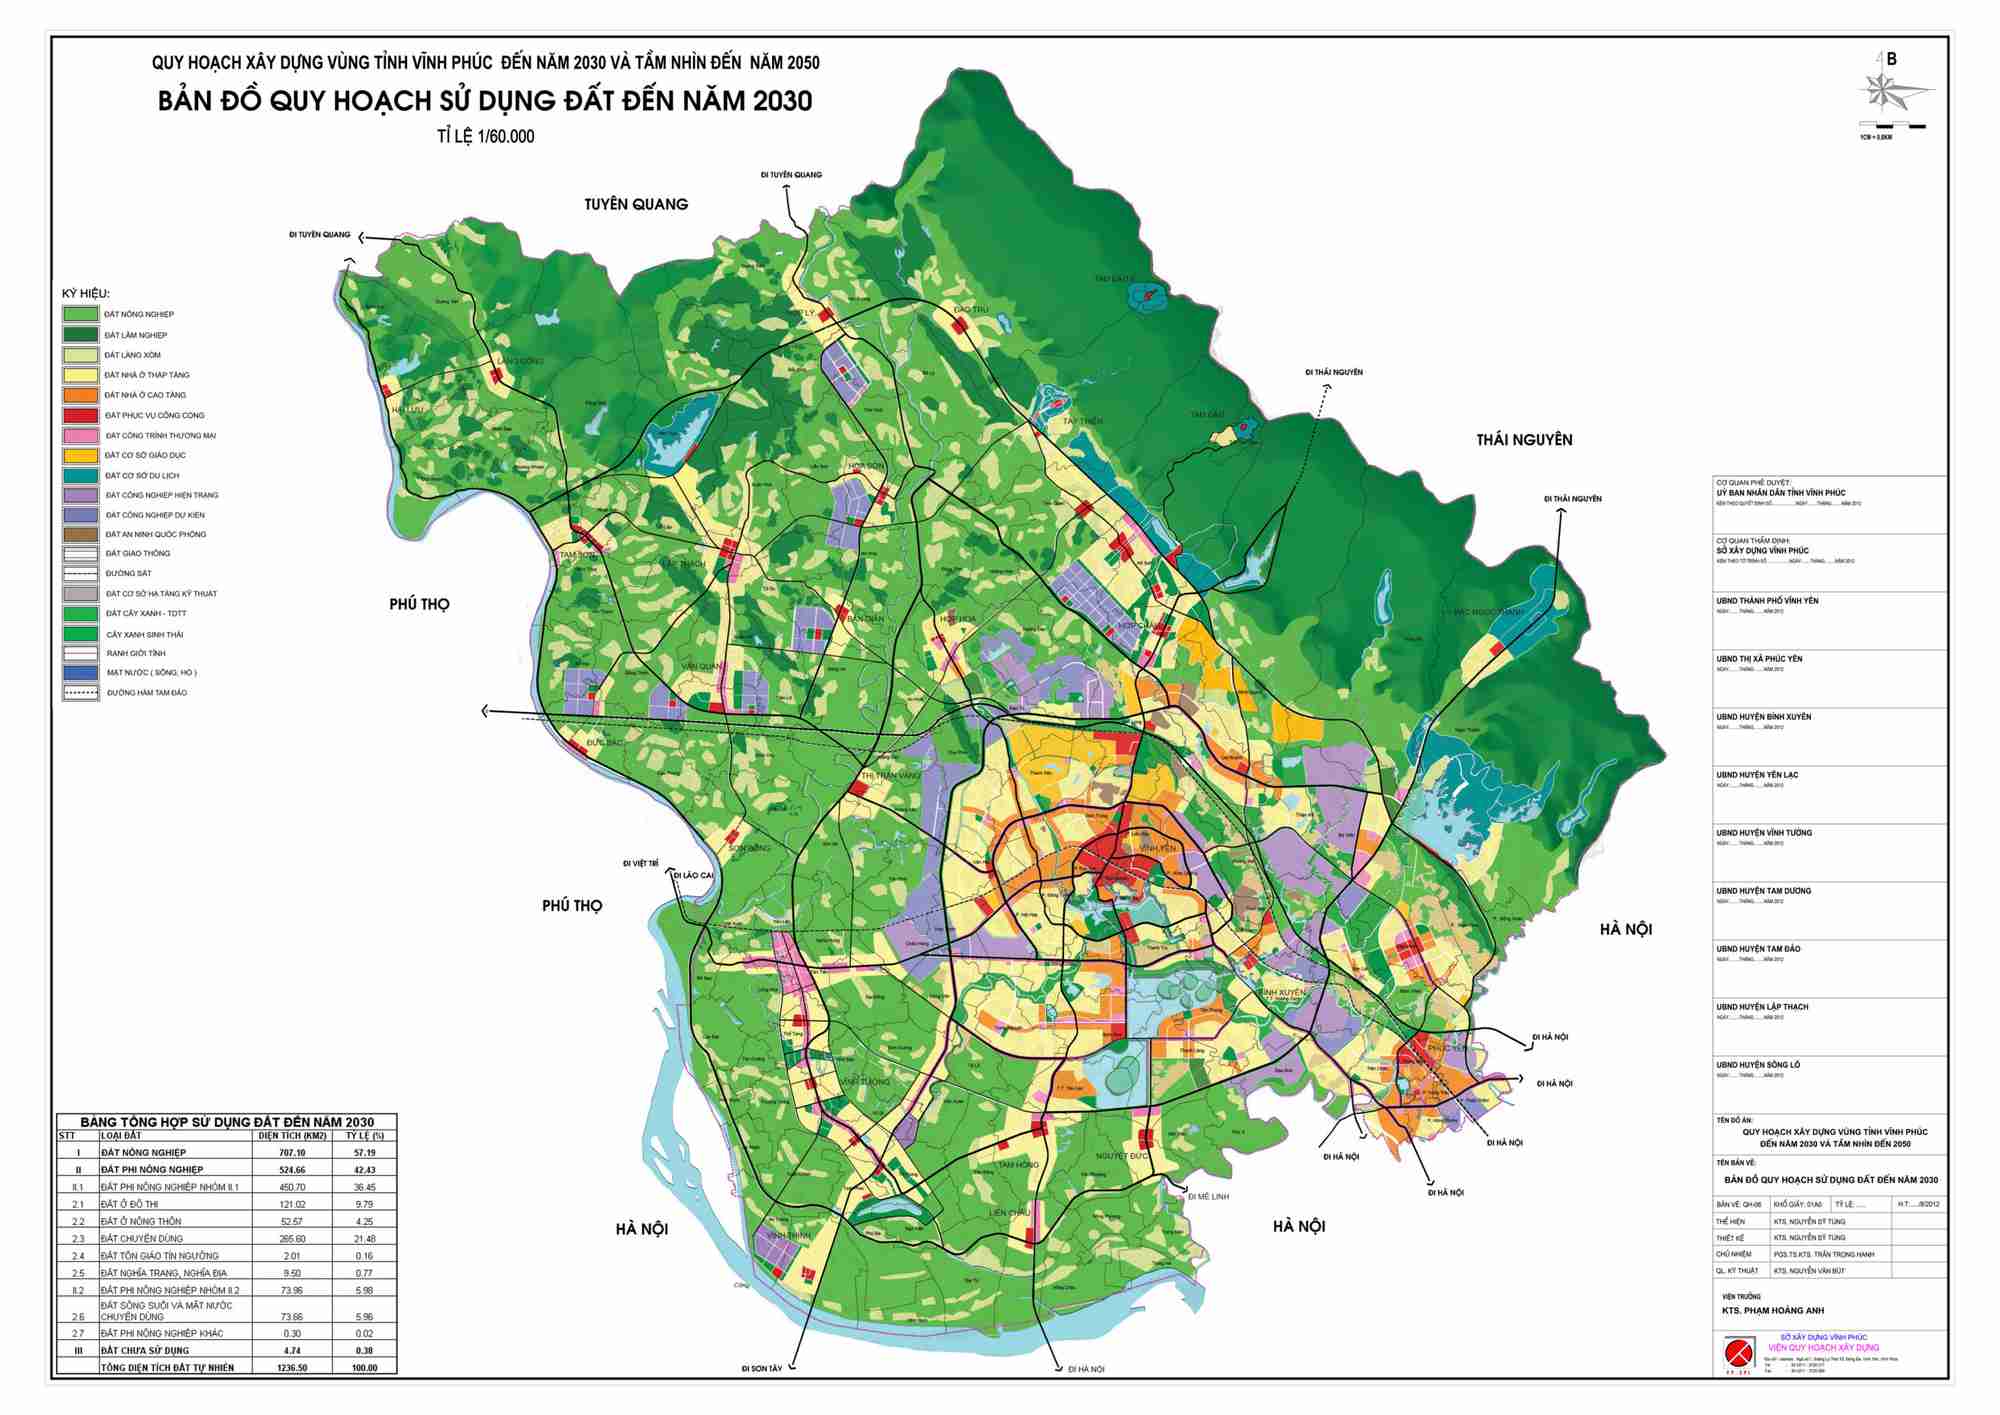 Bản đồ quy hoạch sử dụng đất đến năm 2022 ở Vĩnh Phúc